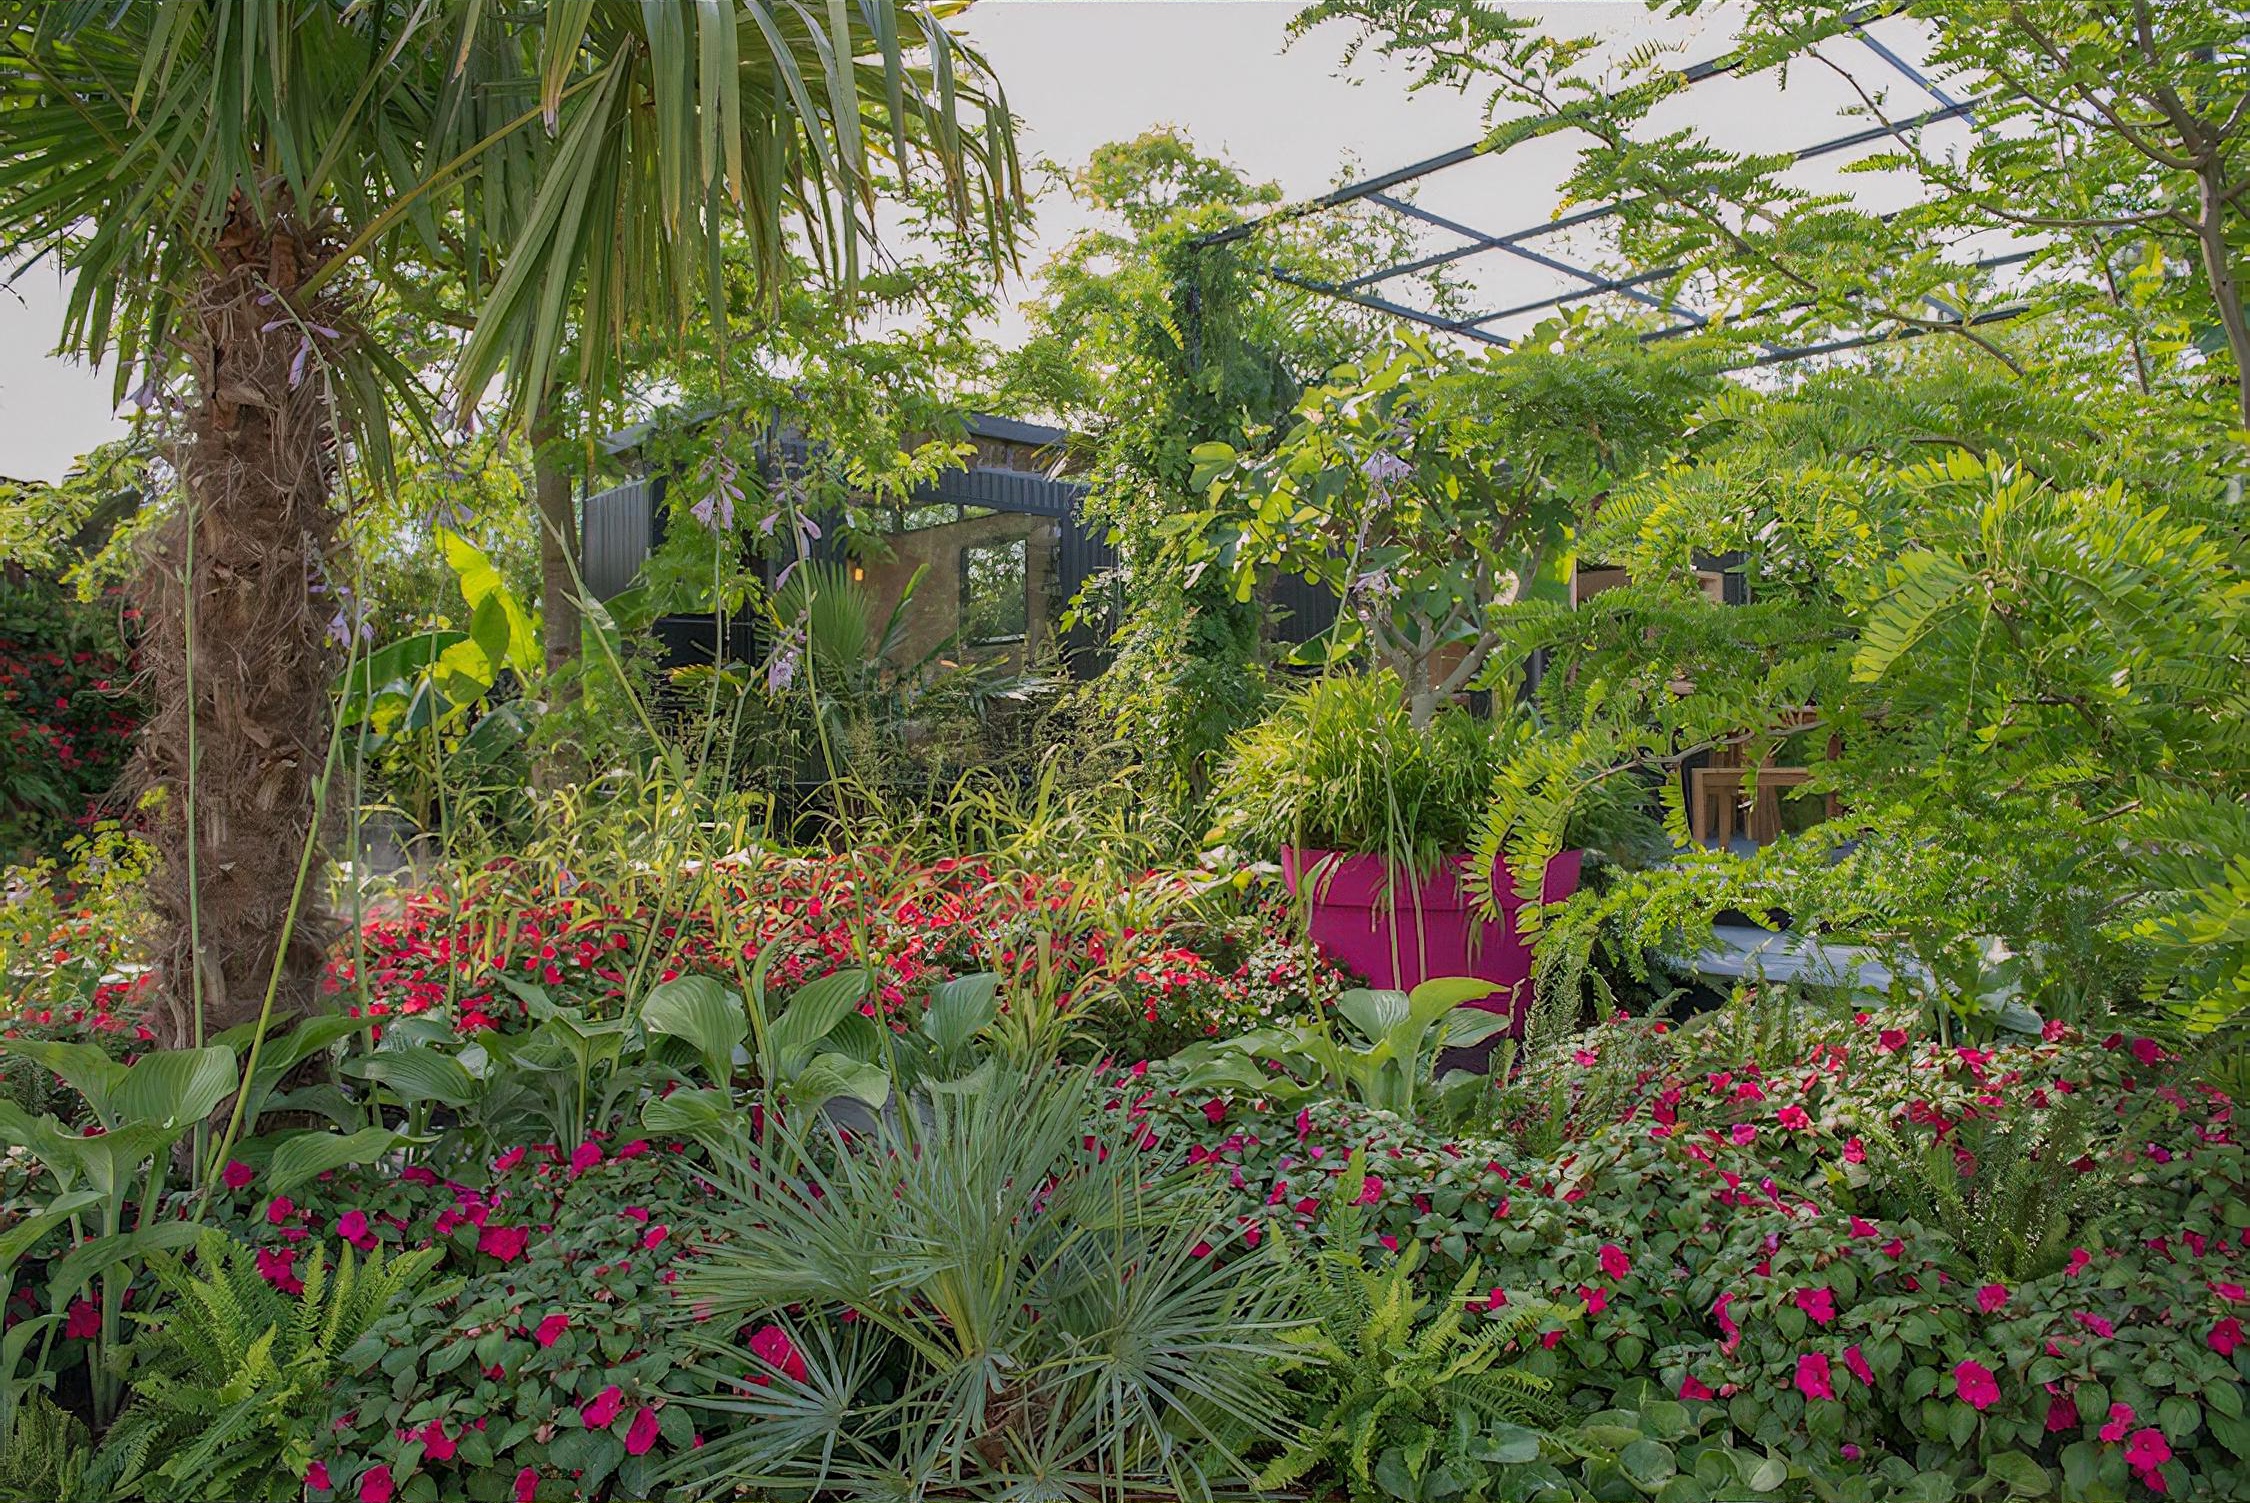 B&Q's Bursting Busy Lizzie Garden Hampton Court Flower Show 2018 by garden designer Matthew Childs